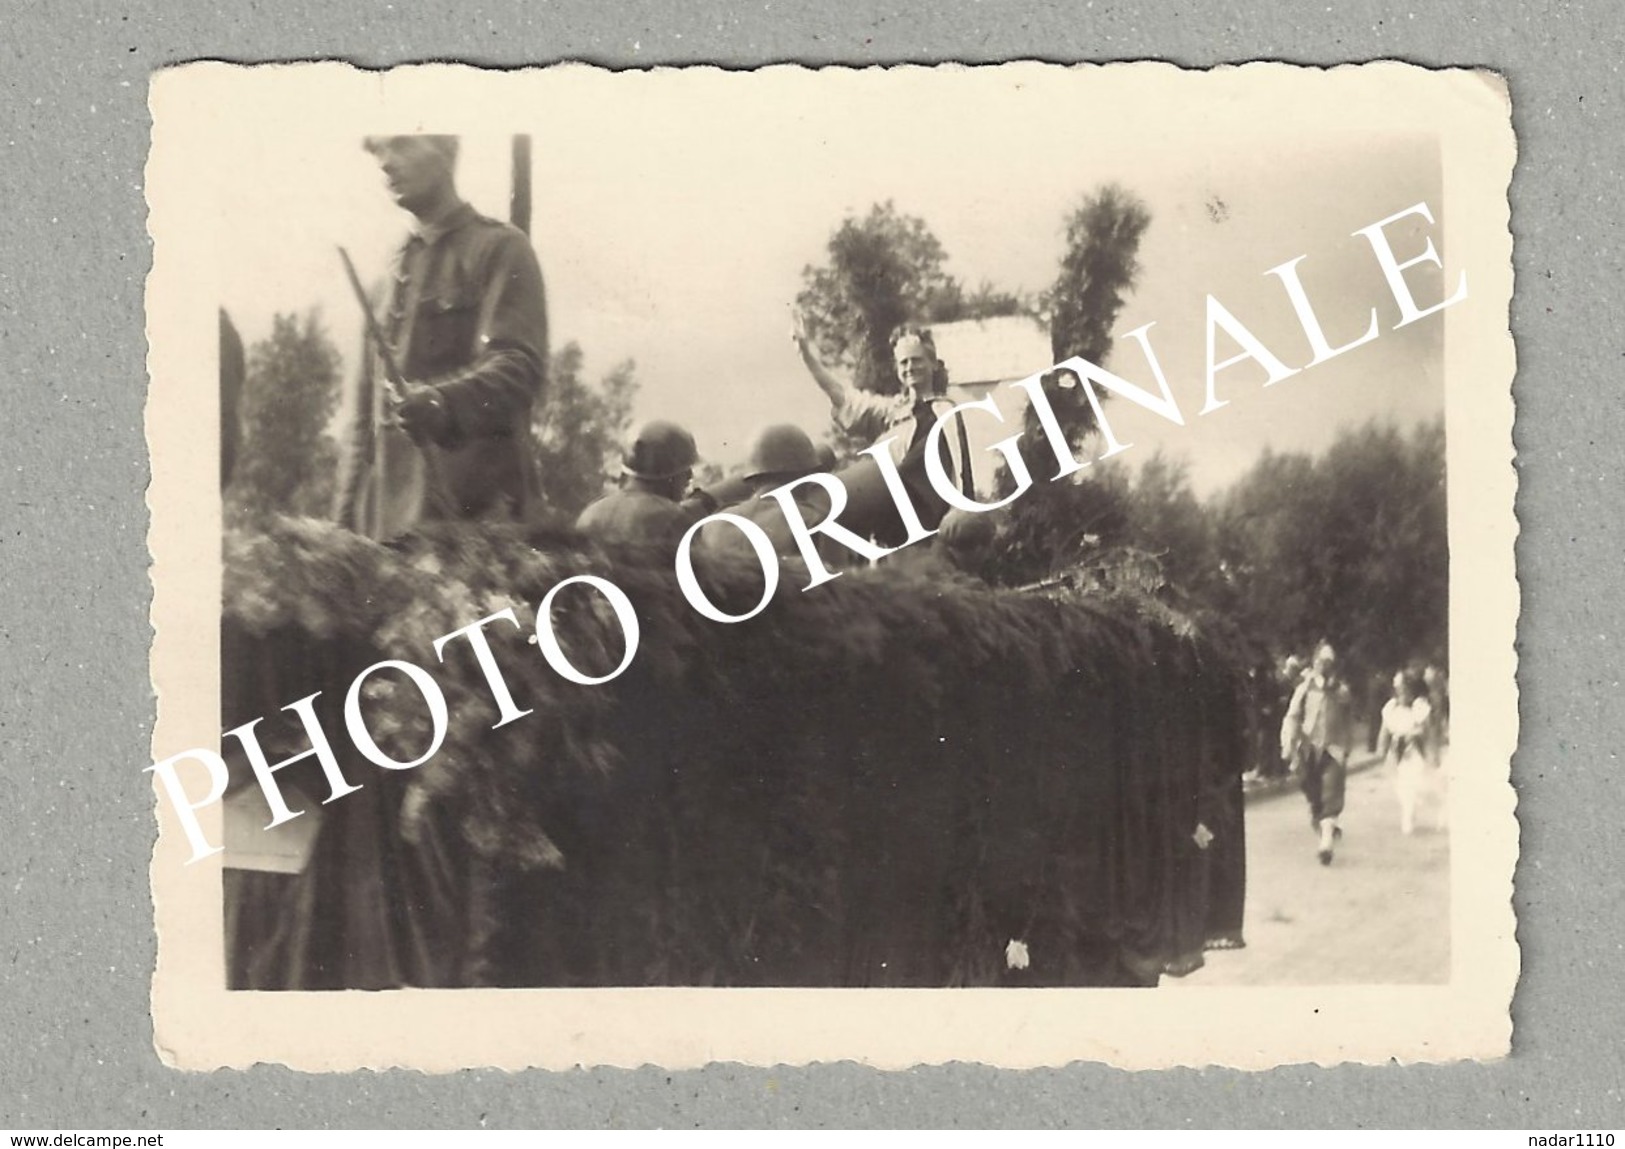 Guerre 40/45 - Libération - BEAUVECHAIN - Lot exceptionnel de 6 photographies du CORTEGE de la VICTOIRE en 1945